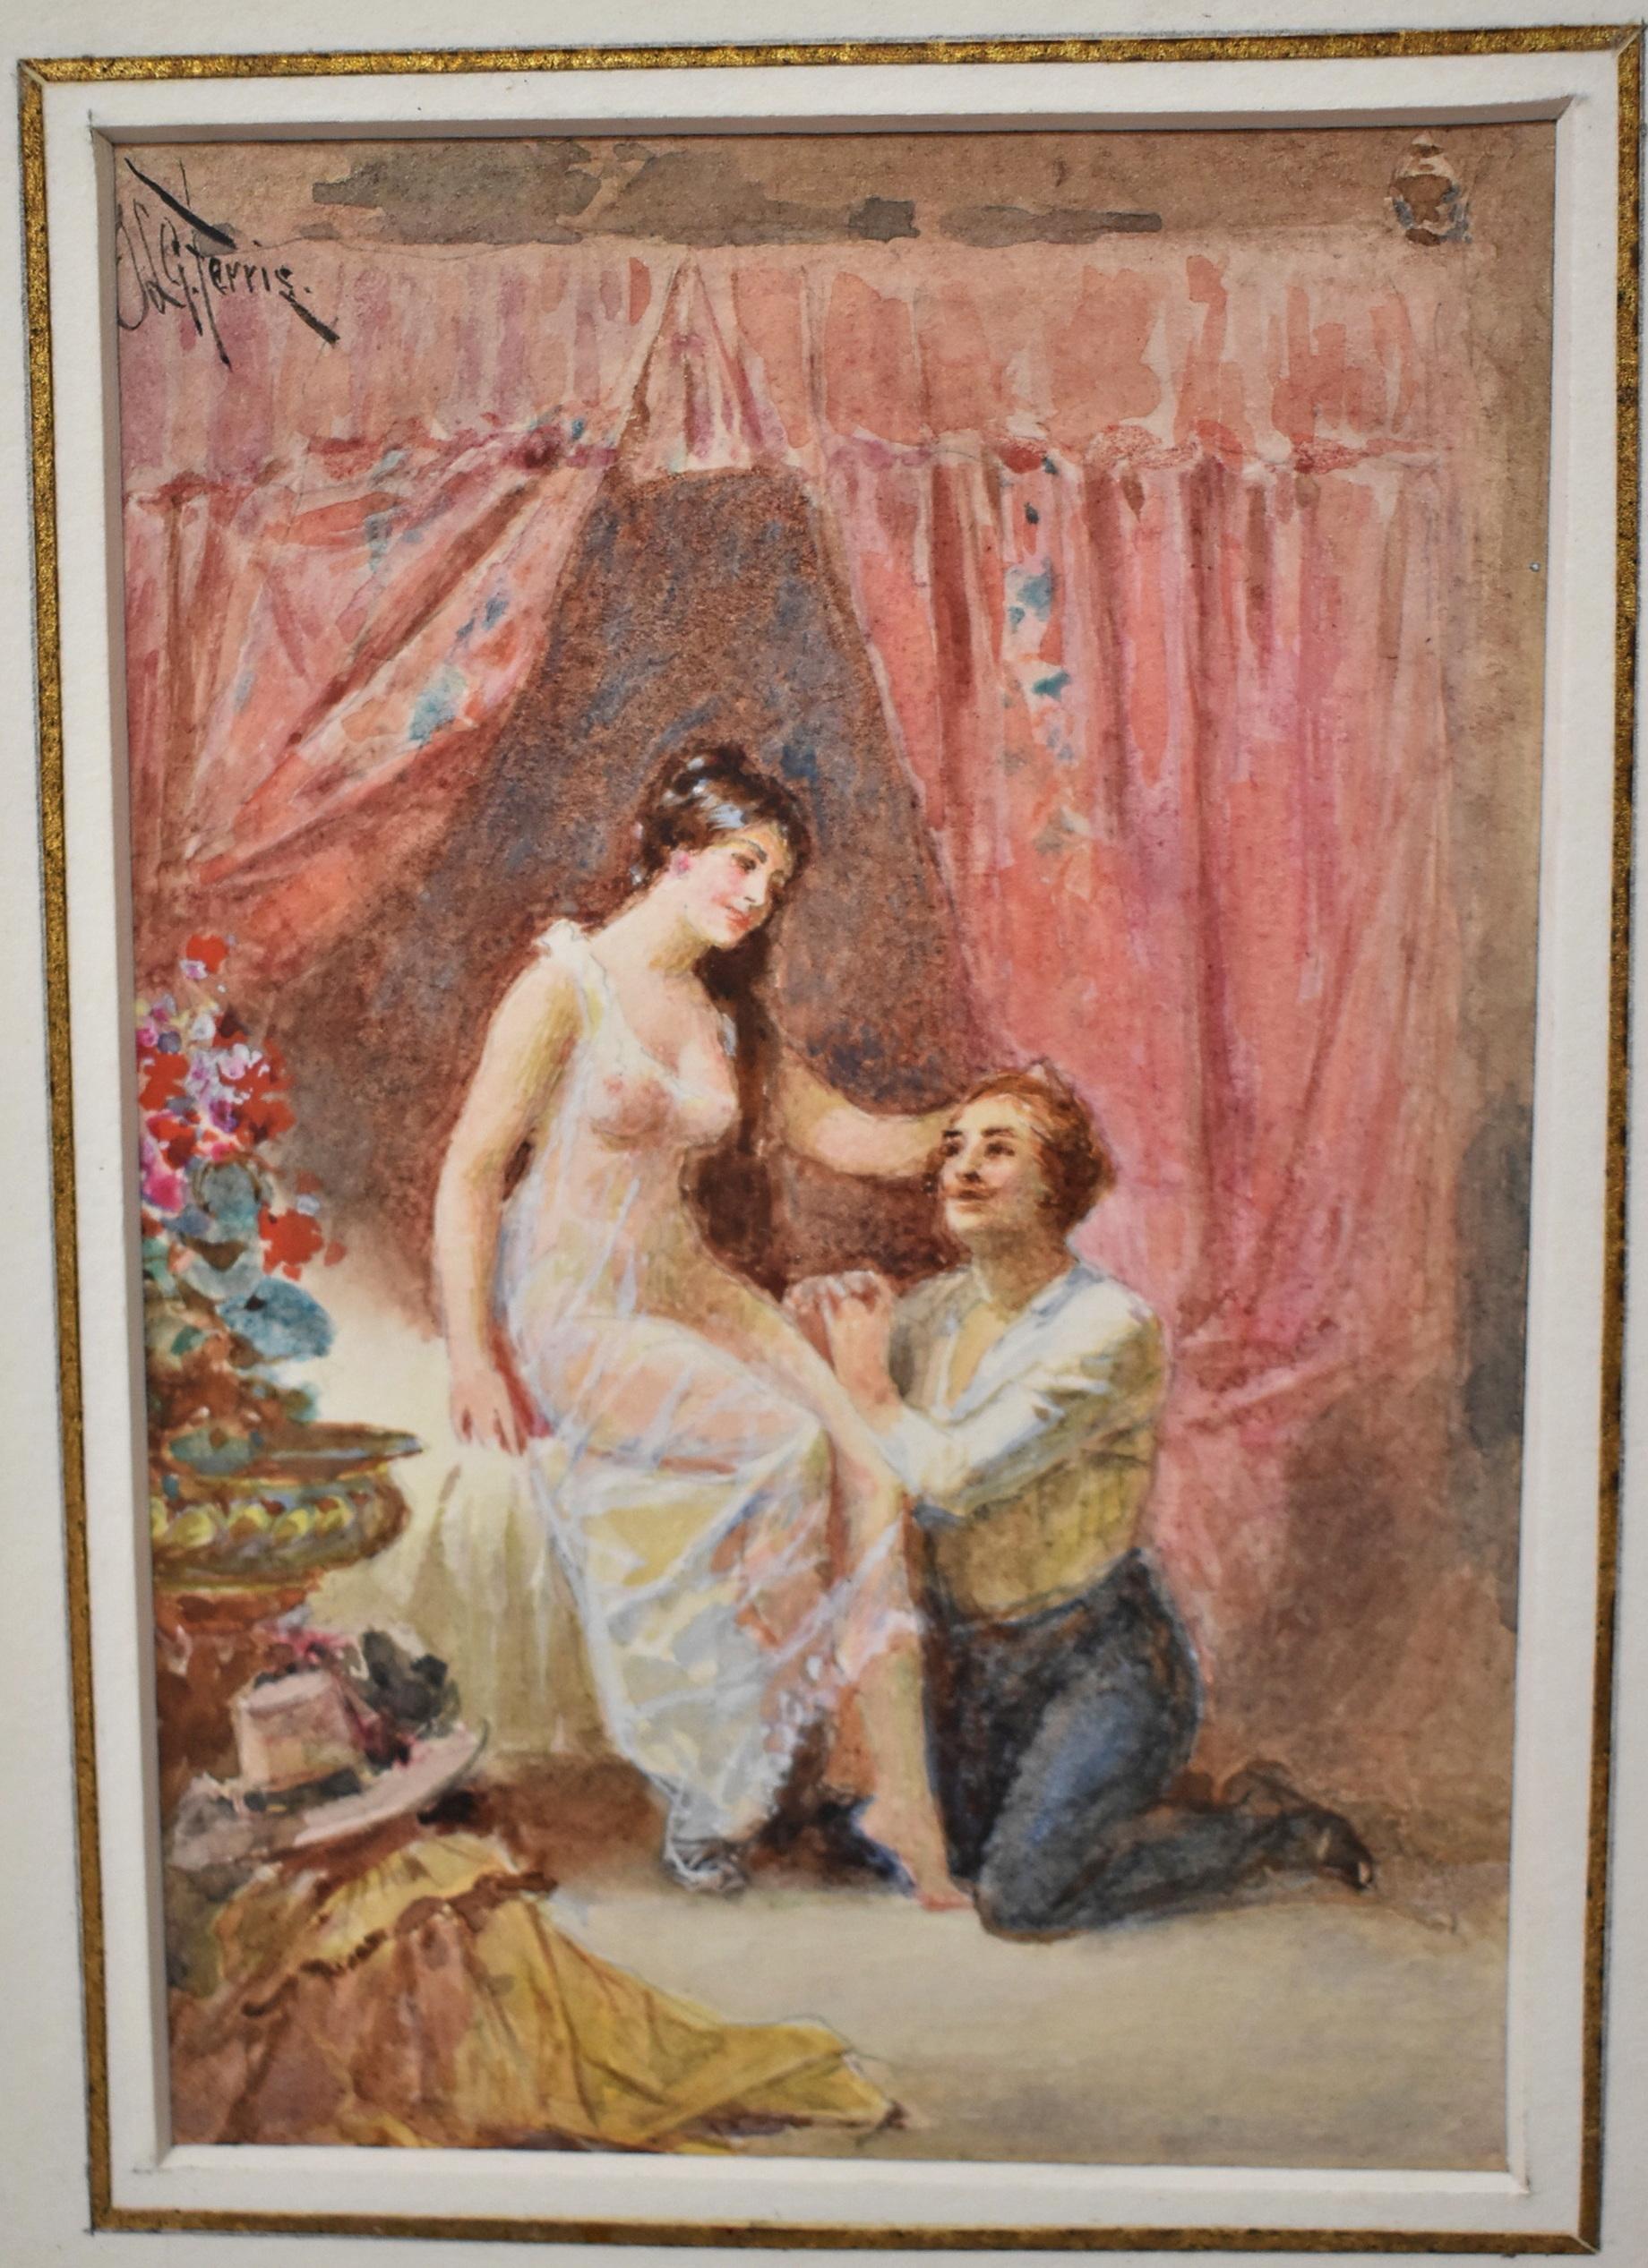 Jean Leon Gerome Ferris - Aquarelle encadrée. Jean Leon Gerome Ferris (1863-1930) était un peintre de Philadelphie, PA. Cette aquarelle représente une femme assise sur un lit avec son amant à genoux à ses côtés. Il est encadré dans un cadre doré